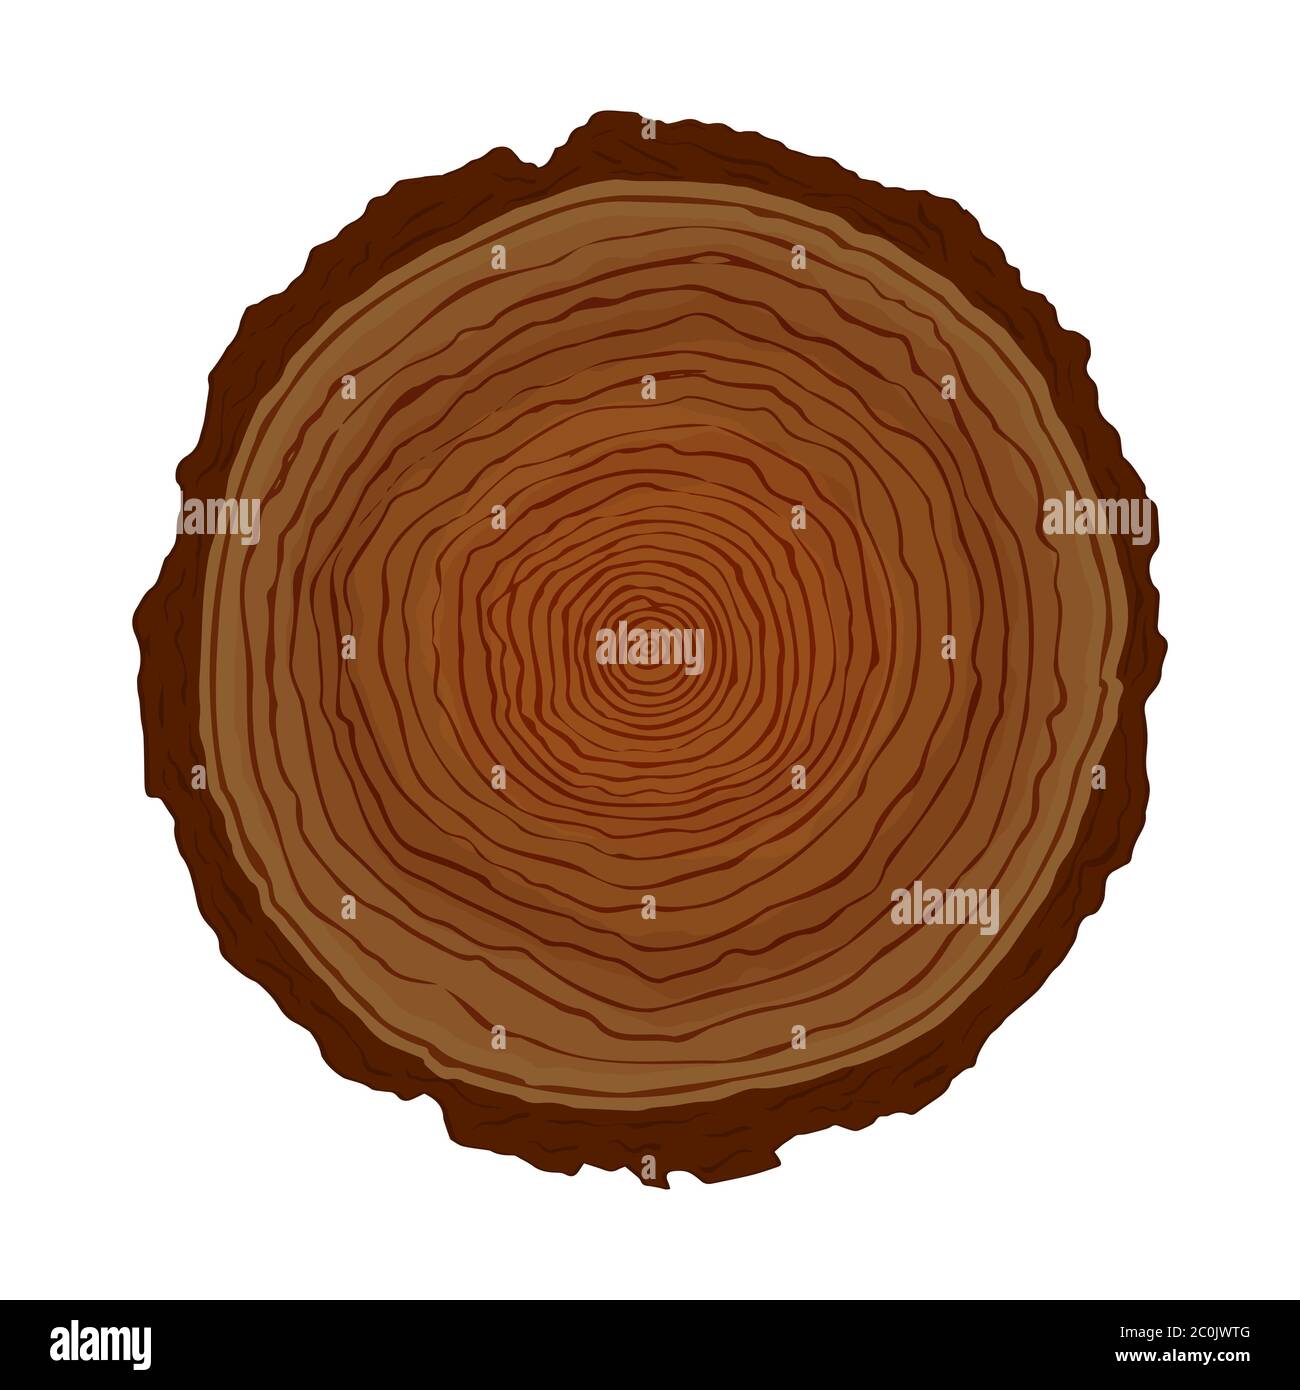 Cercle d'arbre en bois coupé avec des formes d'anneau naturelles sur fond blanc isolé. Illustration de tronc en bois dessiné à la main pour l'étude scientifique de la croissance d'âge végétal Illustration de Vecteur